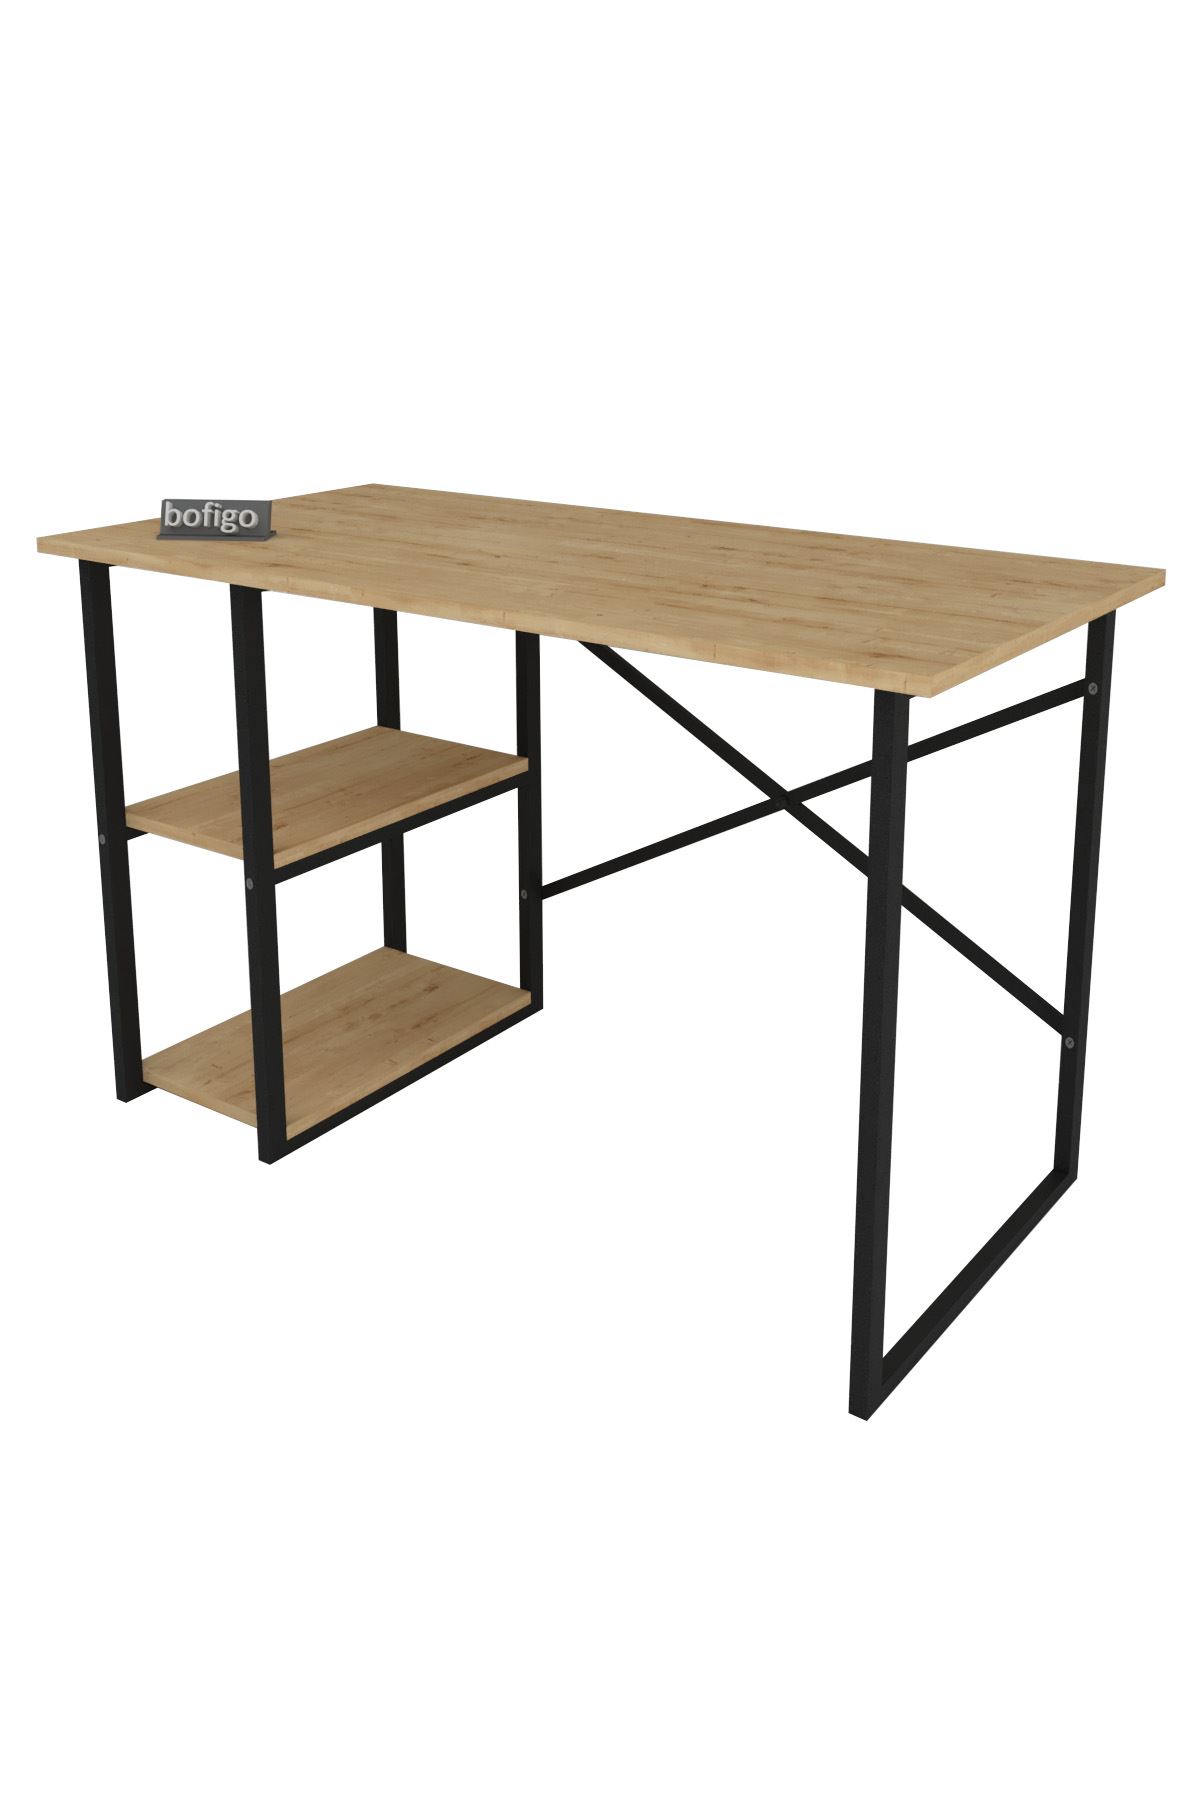 Bofigo 2 Shelf Study Desk 60x120 cm  White